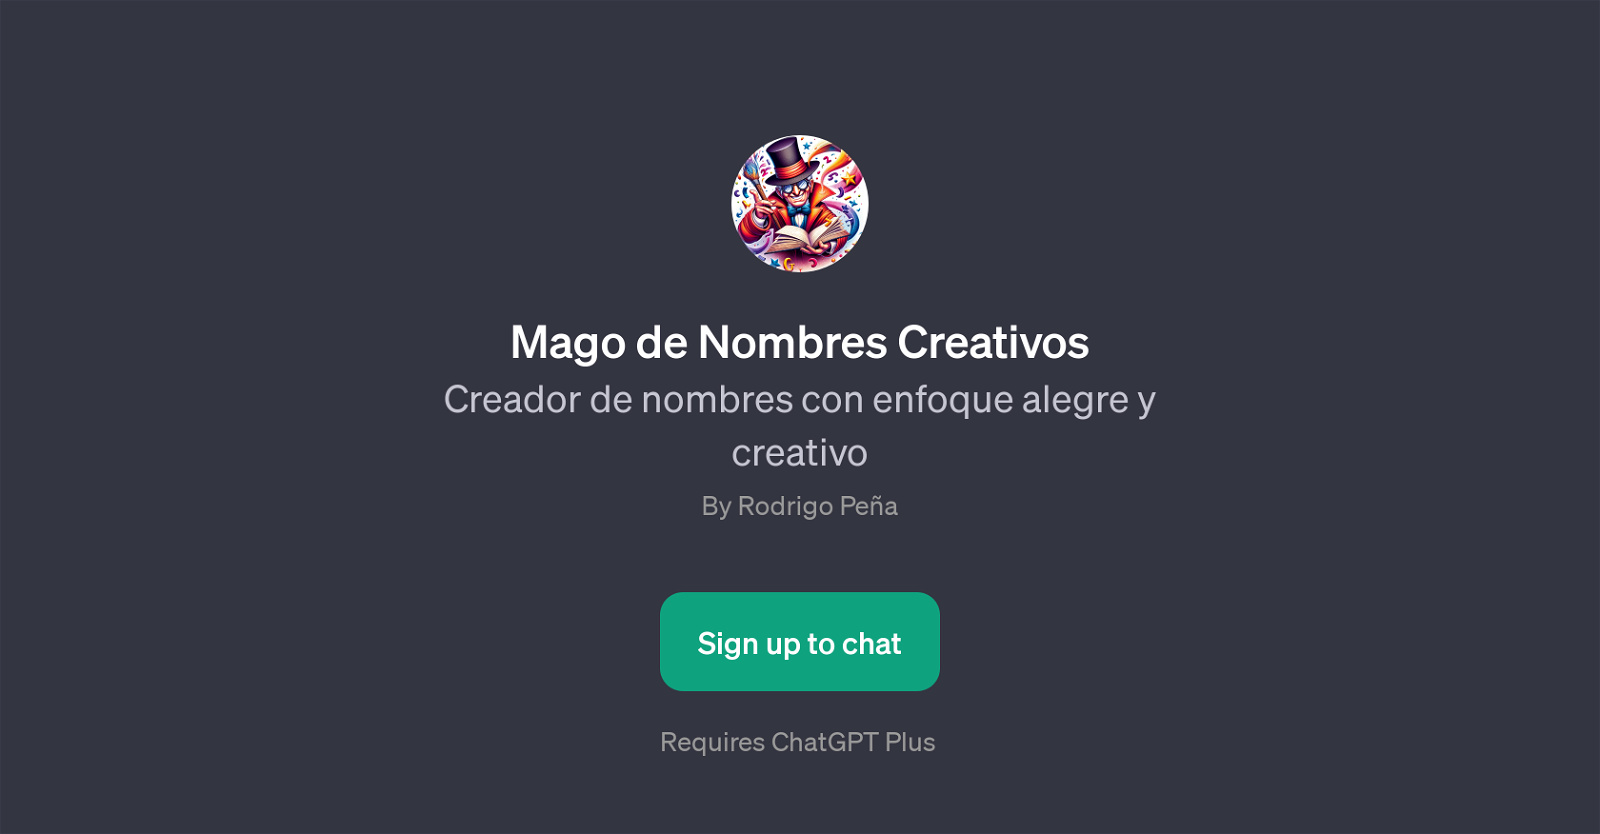 Mago de Nombres Creativos website